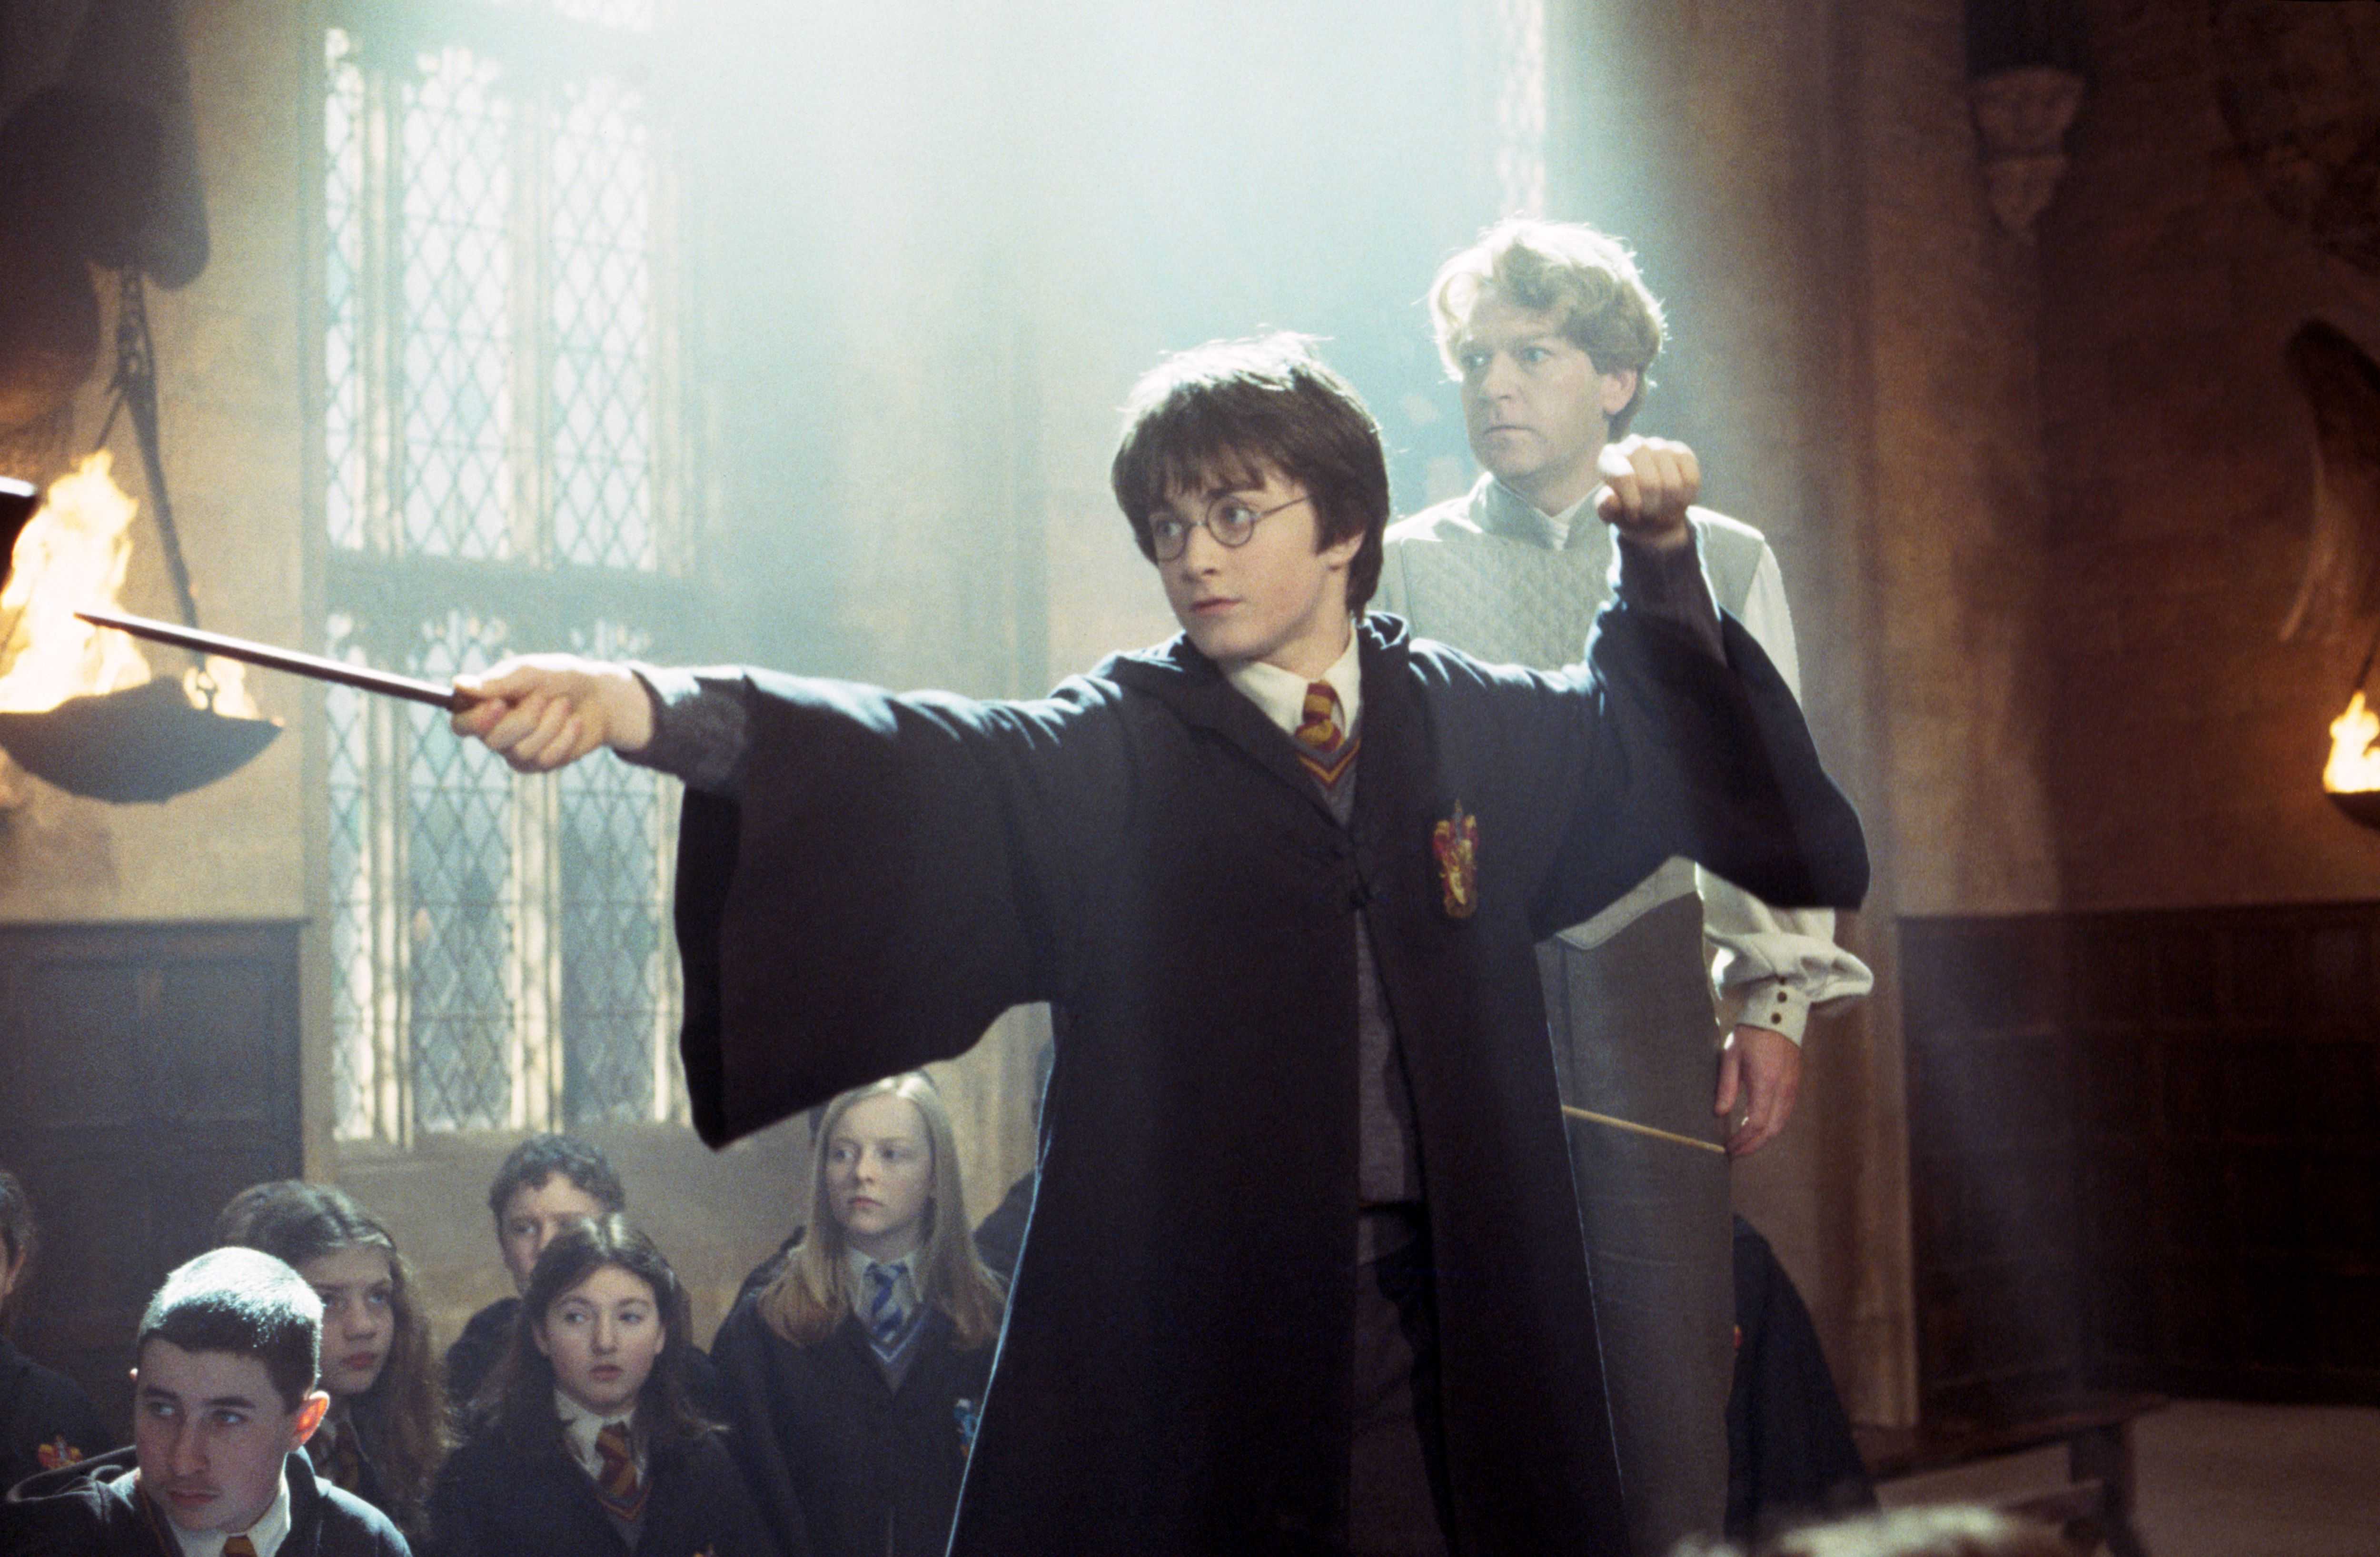 Гарри Поттер и Орден Феникса вышел на экраны в далеком 2007 году Это пятая часть серии фильмов, рассказывающая о взрослении юного волшебника Она особенно полюбилась фанатам книг о Гарри Поттере Но Орден Феникса - самая длинная книга из всей серии, поэтому